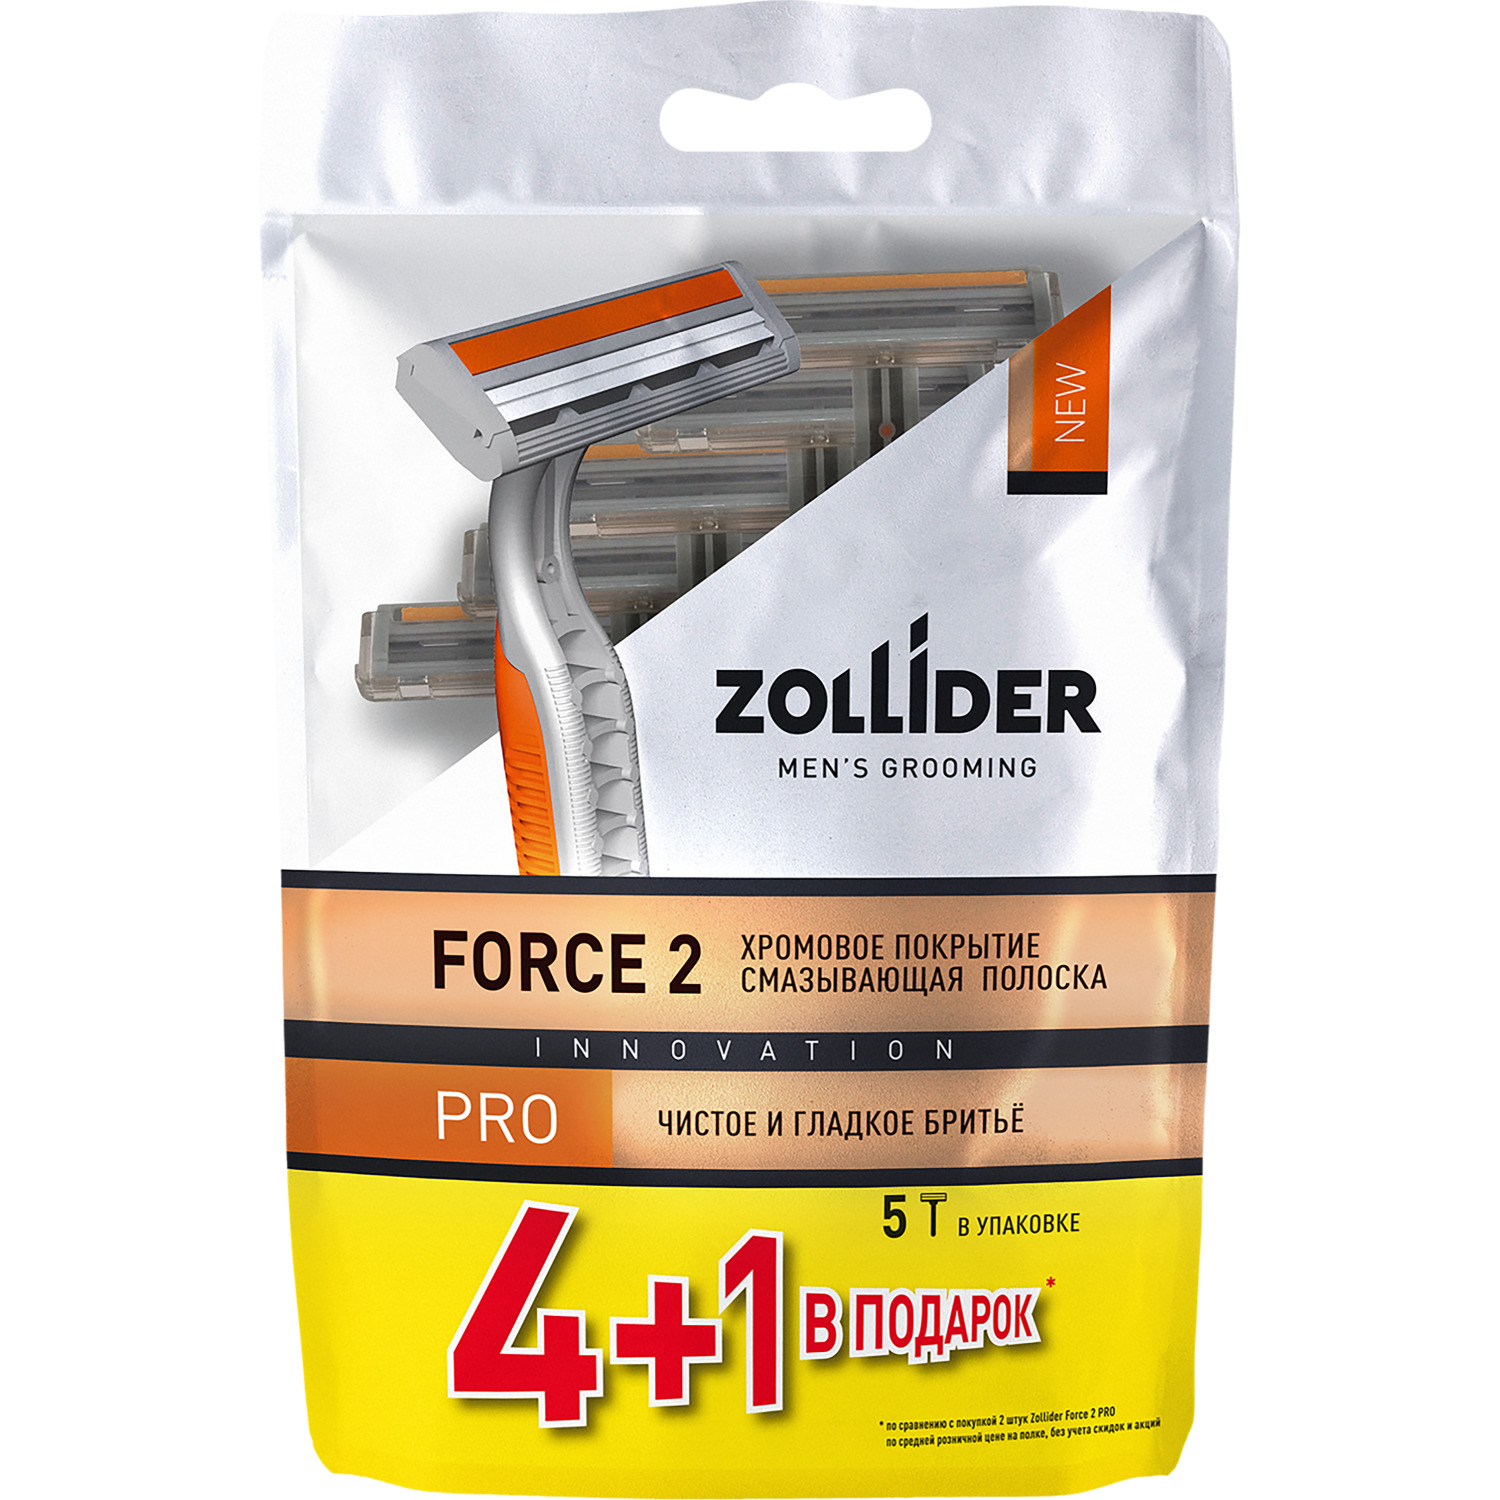 Одноразовые бритвенные станки Zollider Force 2 PRO 2 лезвия 4+1 шт бритвенные станки одноразовые